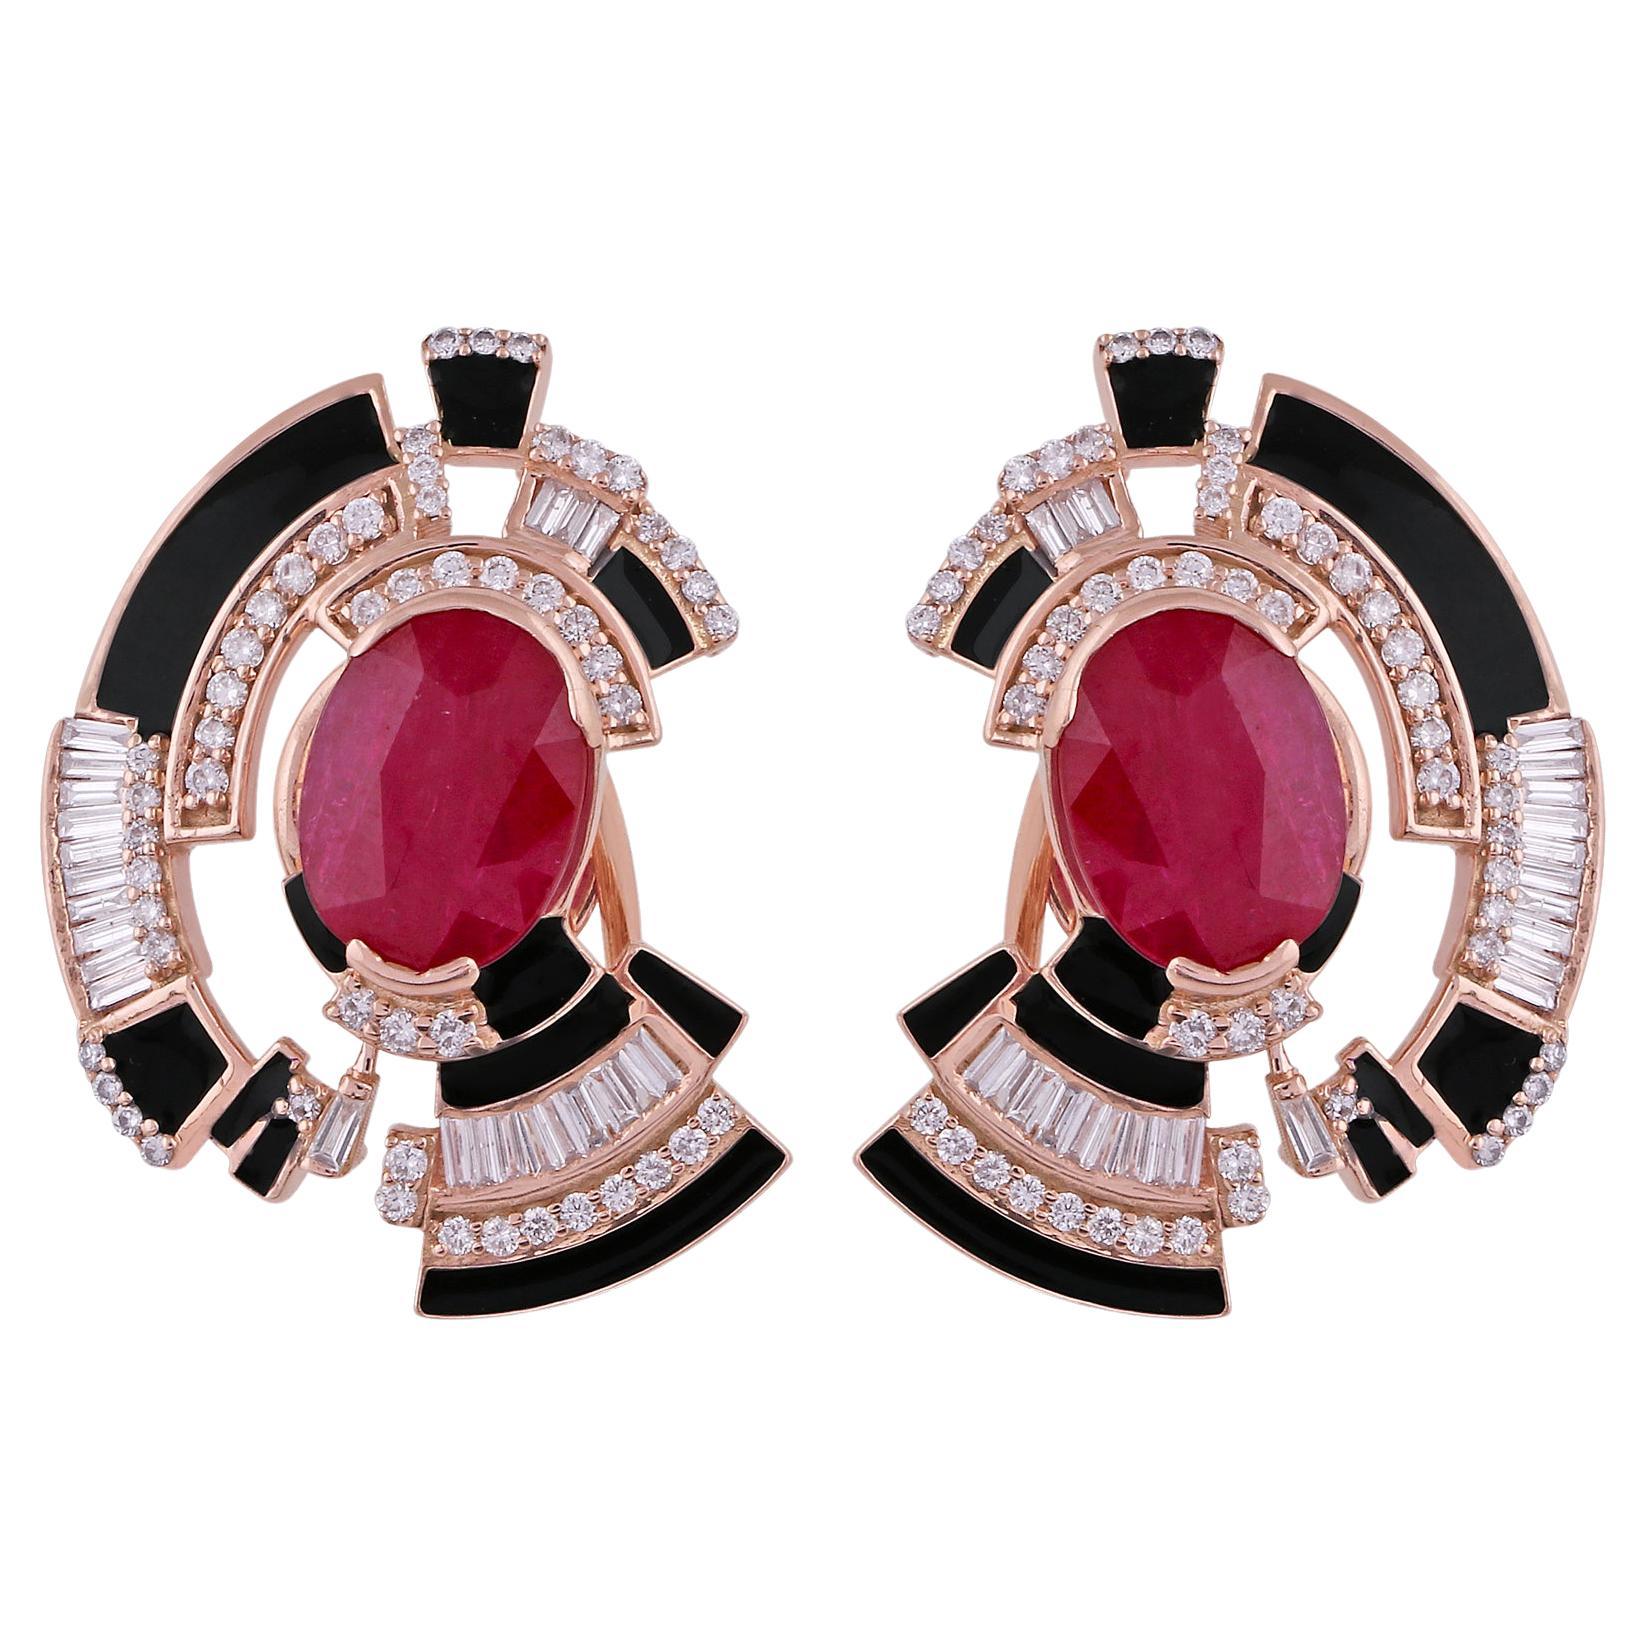 Red Ruby Gemstone Enamel Stud Earrings Baguette Pave Diamond Solid 14k Rose Gold